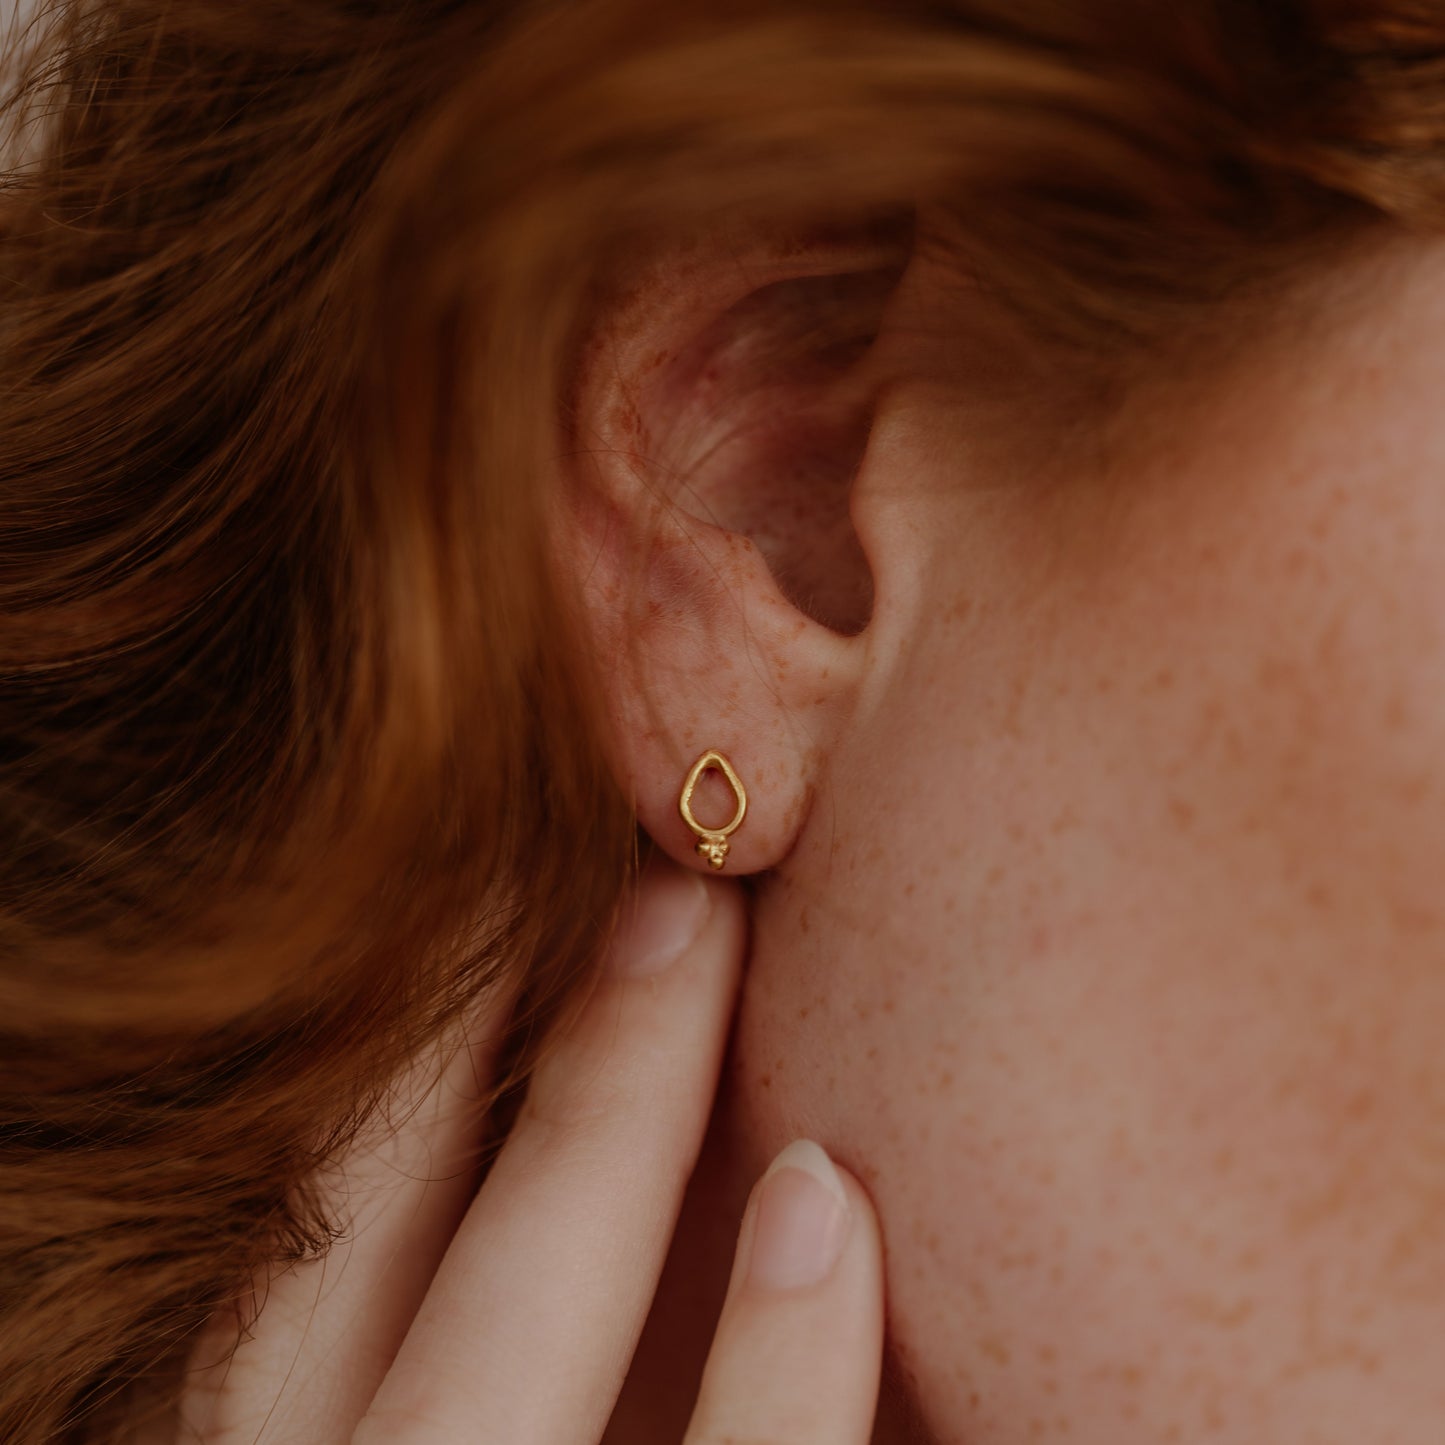 Artisan gold earrings, delicate stud design